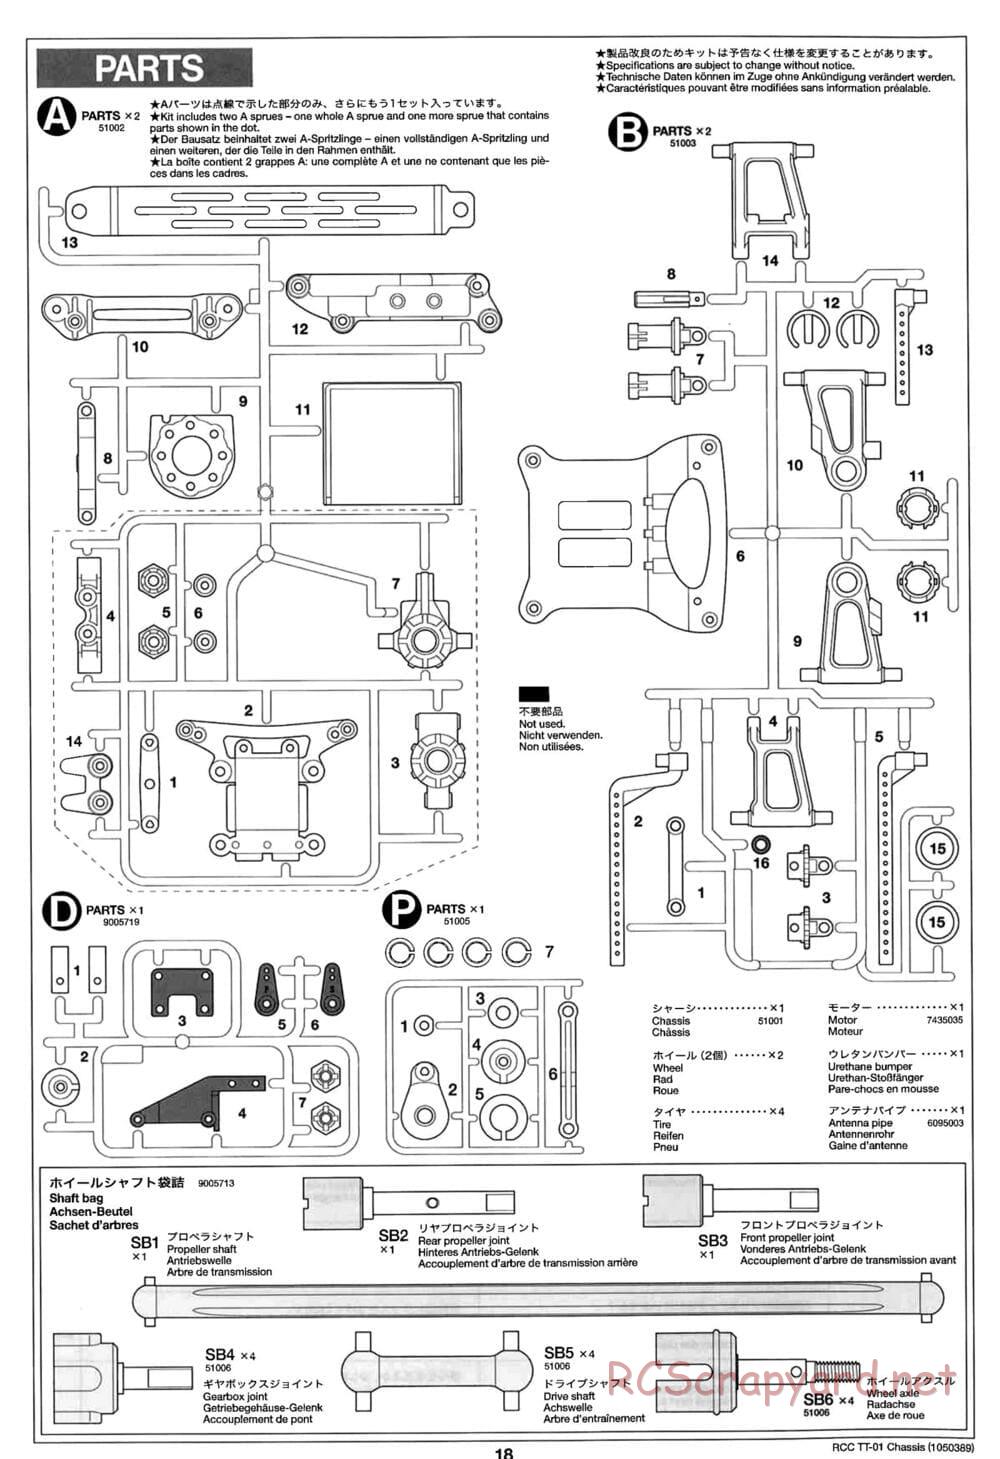 Tamiya - TT-01 Chassis - Manual - Page 18